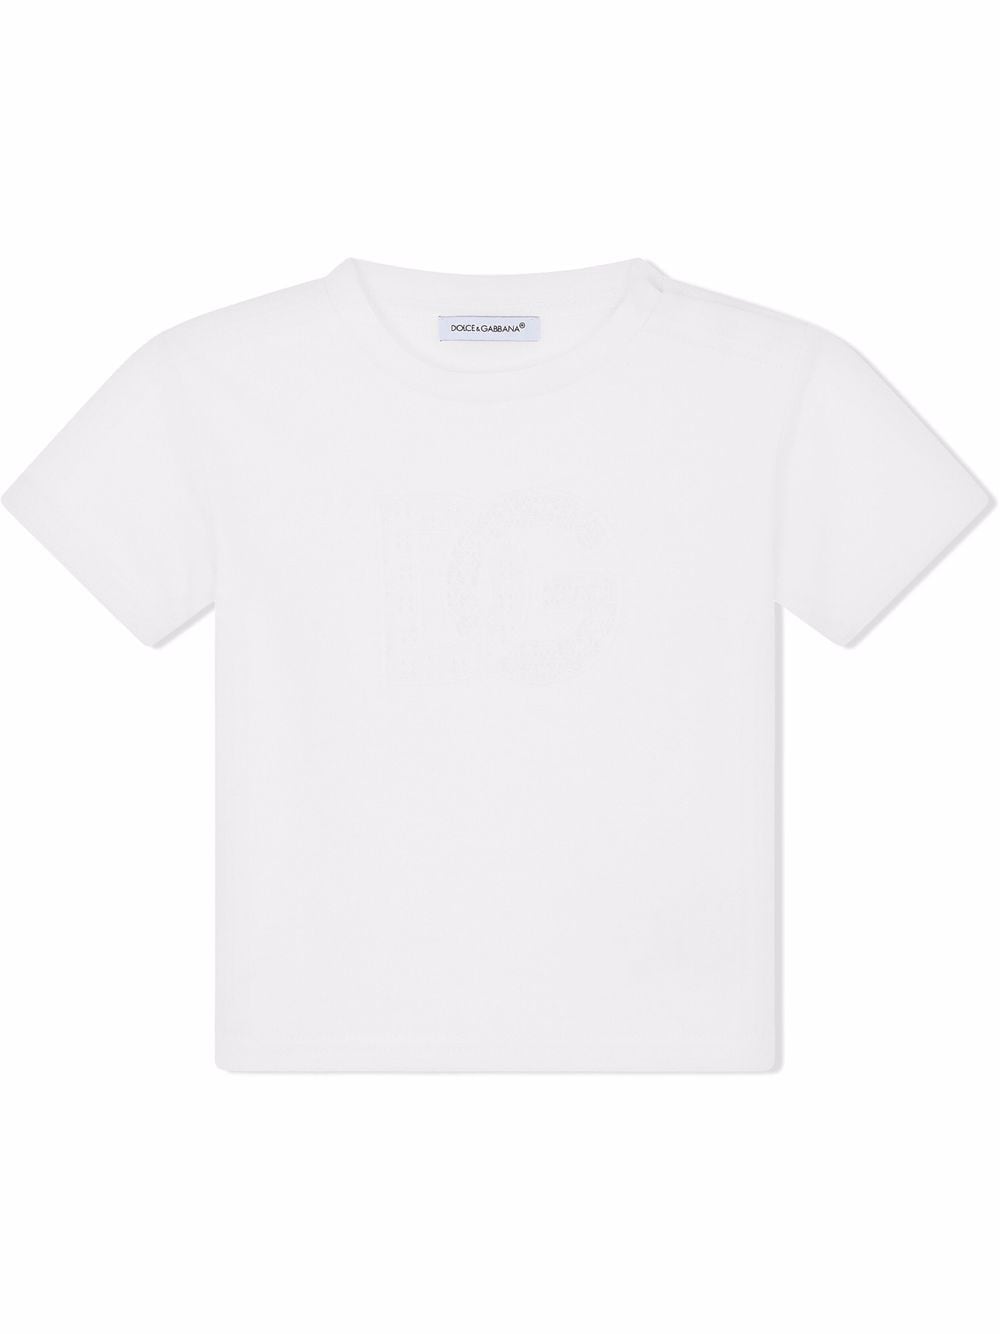 Dolce & Gabbana Kids DG-logo cotton T-shirt - White von Dolce & Gabbana Kids